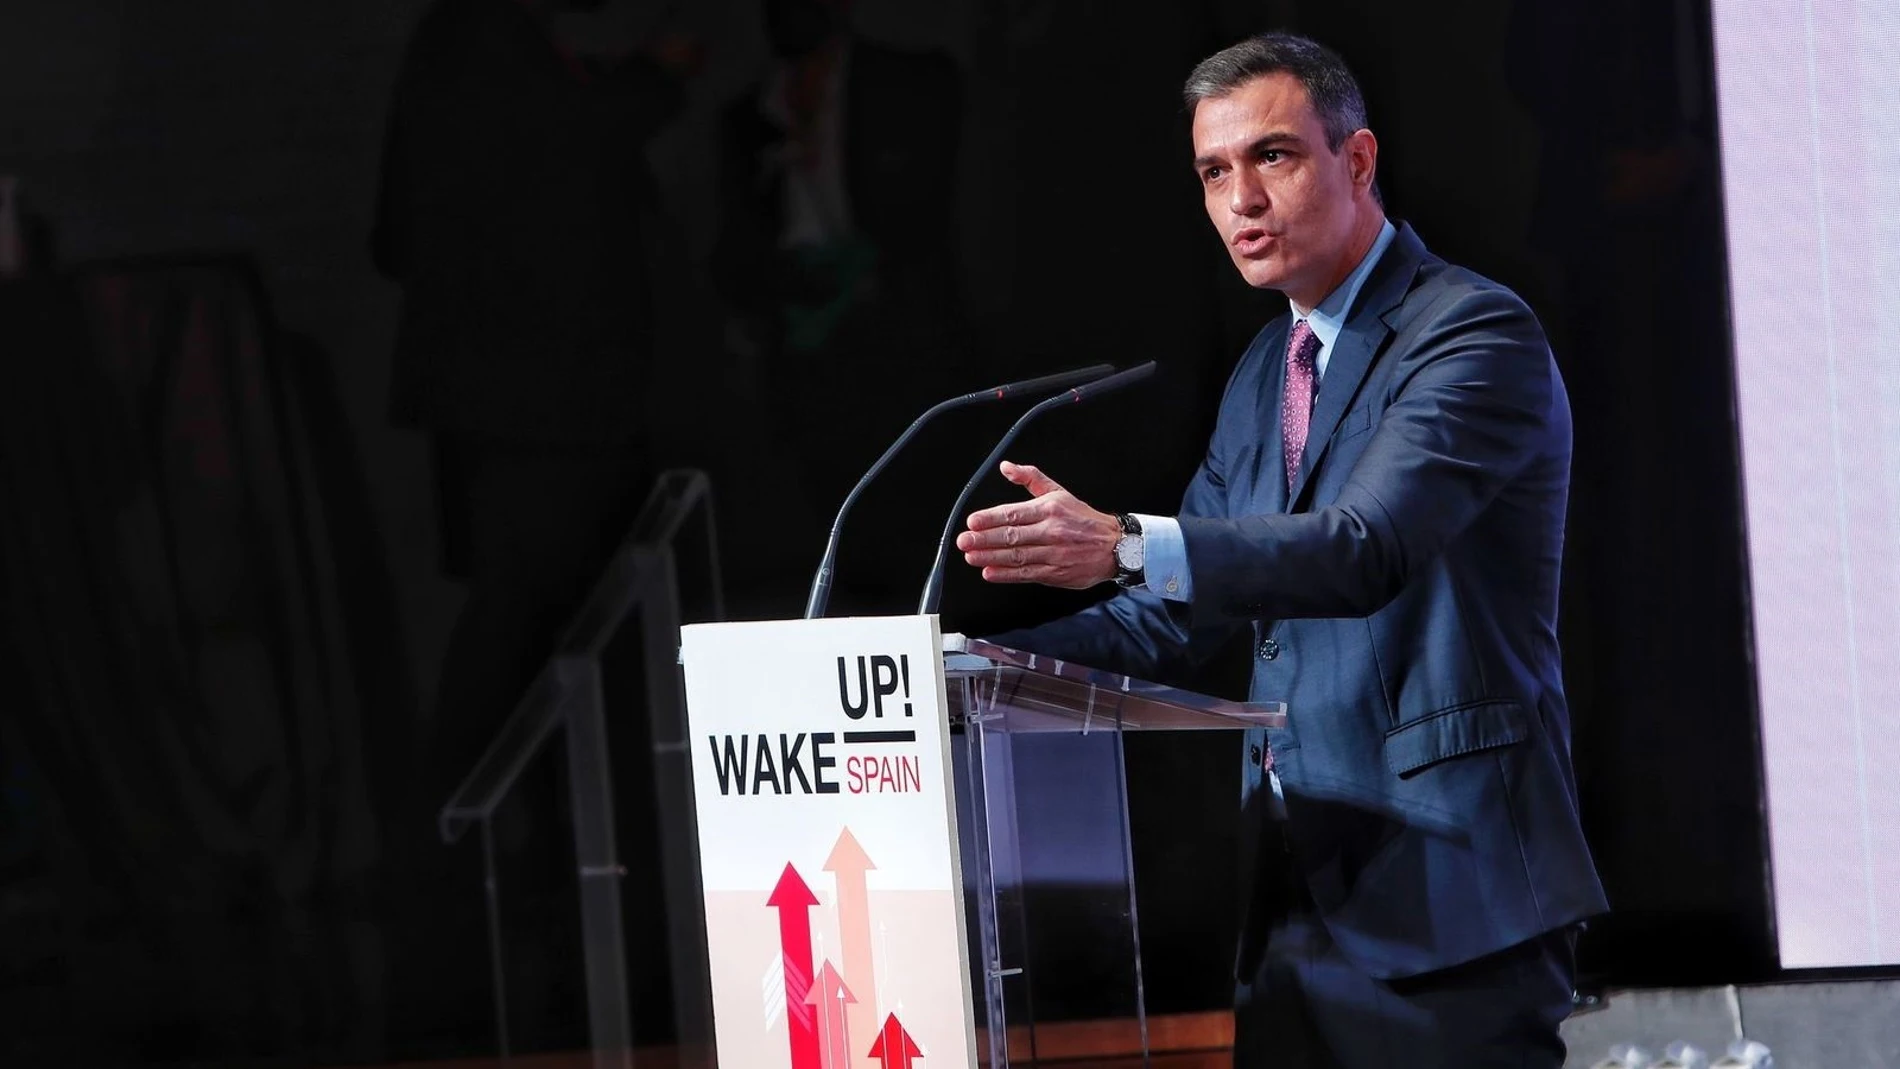 El presidente del Gobierno, Pedro Sánchez, durante su intervención en el simposio 'Wake up, Spain' organizado por El Español, Invertia y D+I